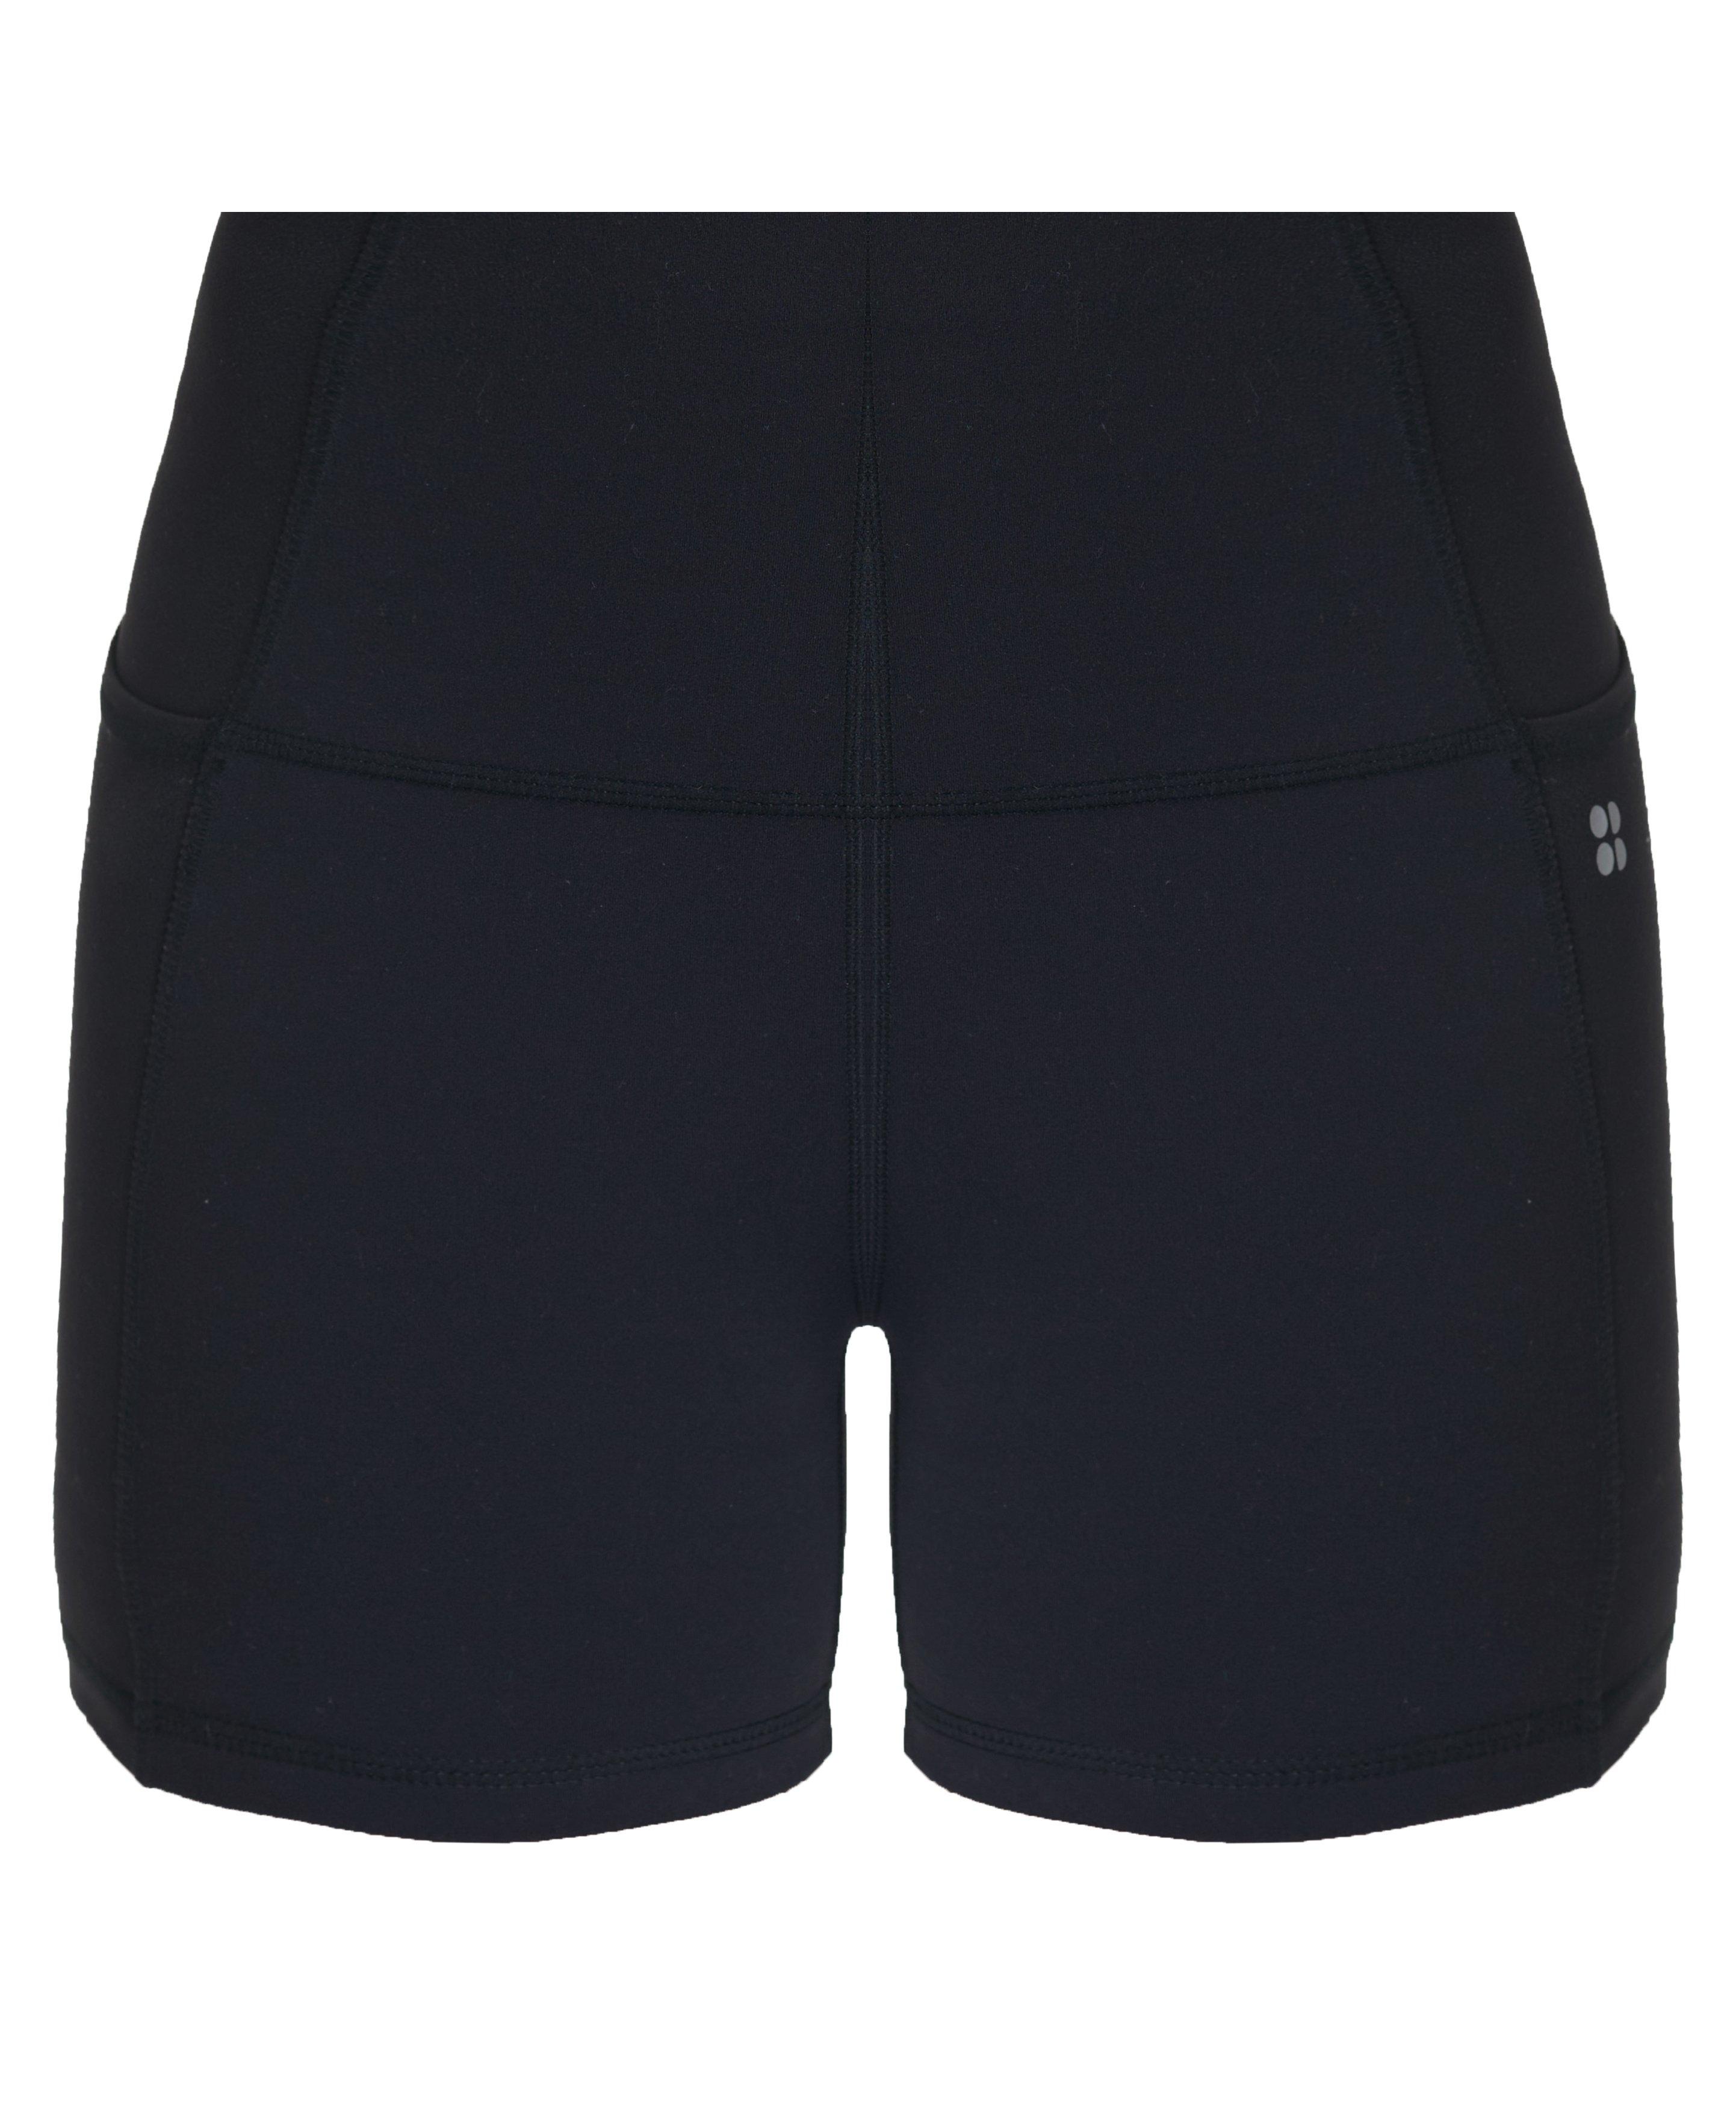 Super Soft 4 Biker Shorts - Black, Women's Shorts + Skorts